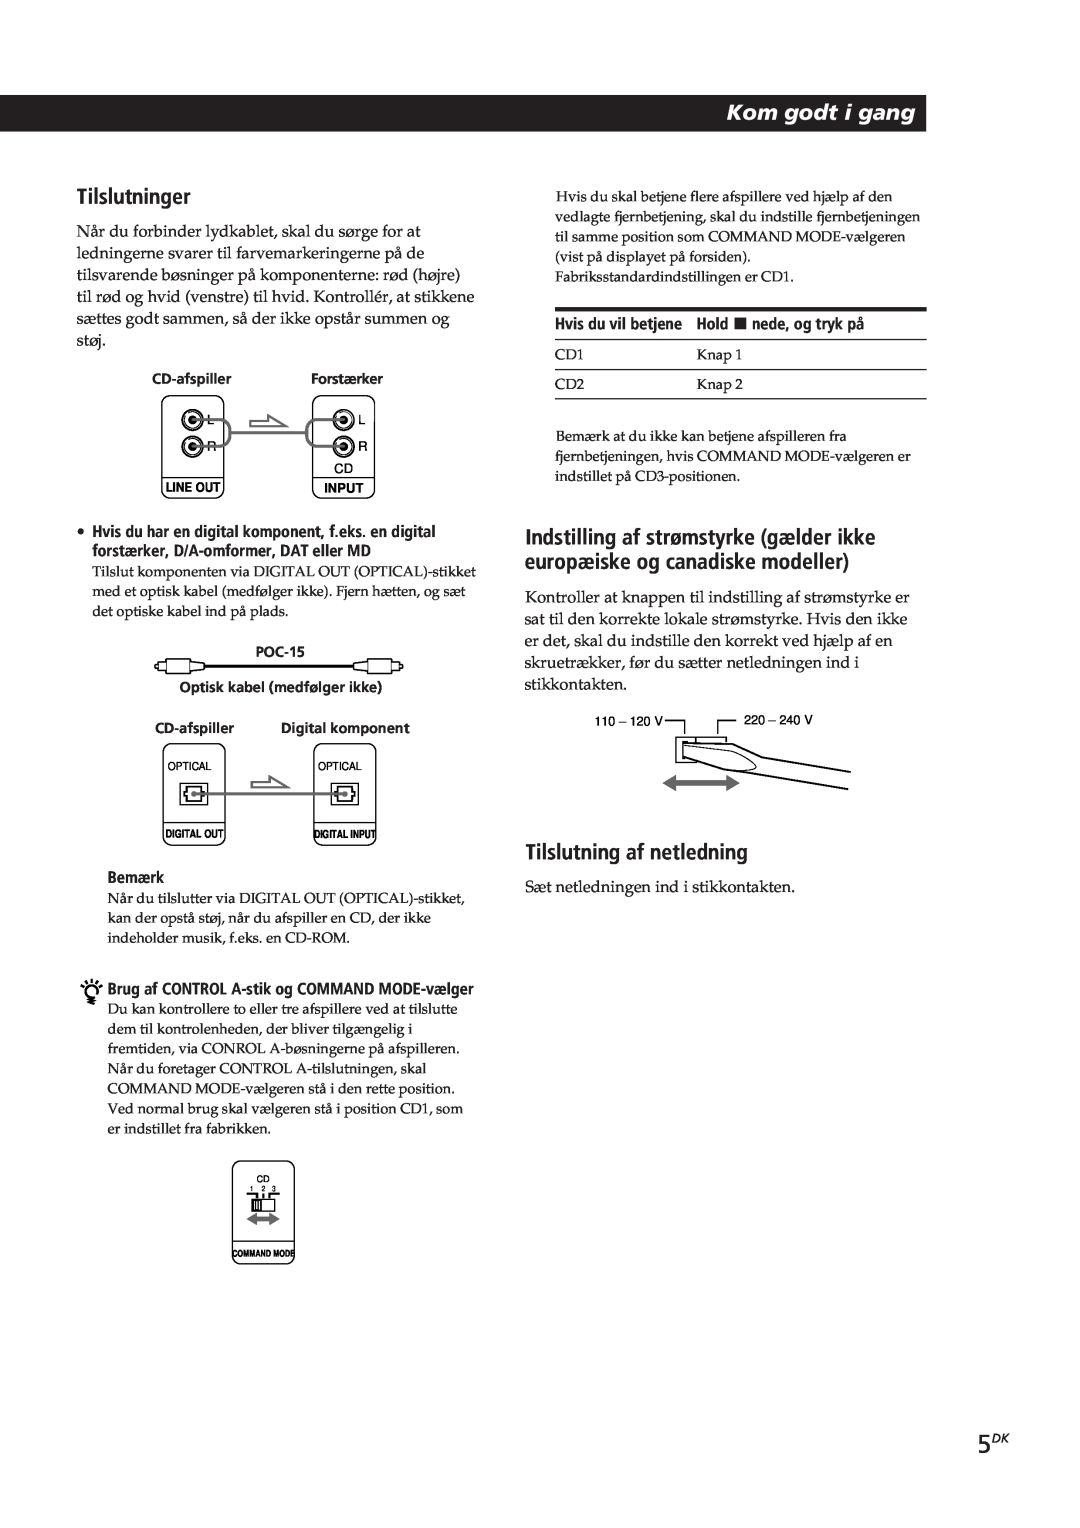 Sony CDP-CX153 manual Tilslutninger, Kom godt i gang, Tilslutning af netledning, Bemærk, Hvis du vil betjene 